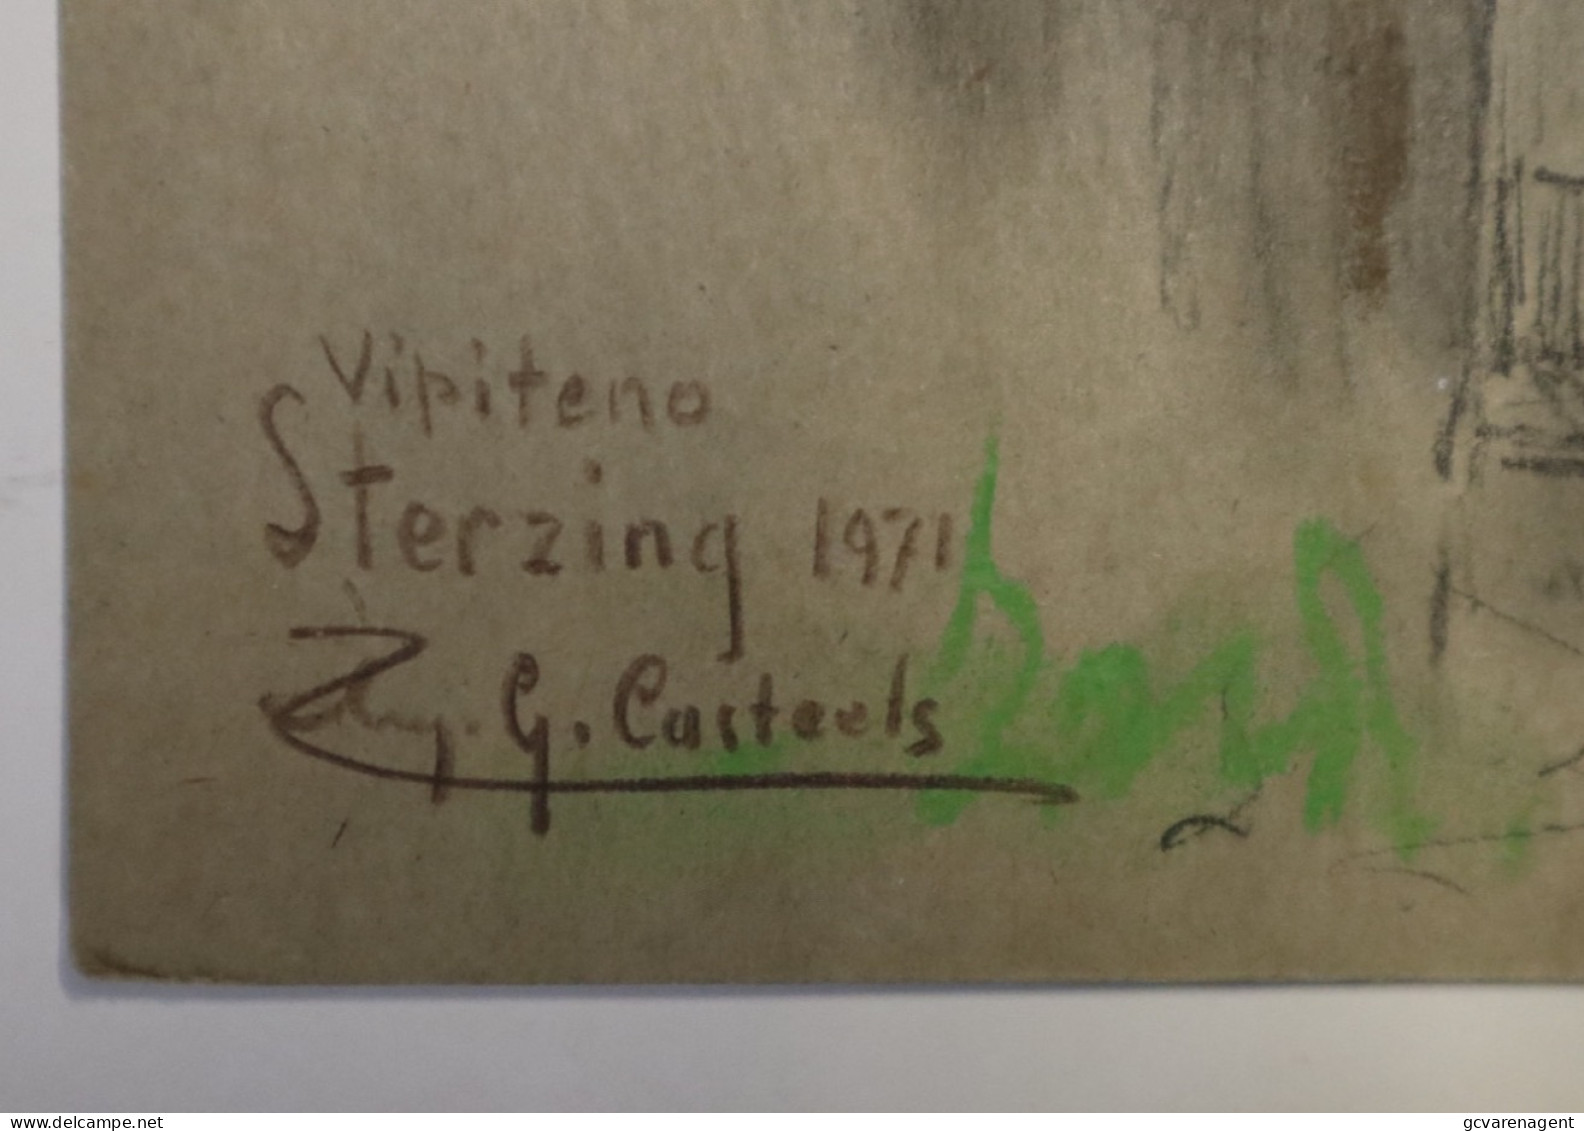 DISEGNO A PASTELLO - VIPITENO STERZING  1971  ILLUSTRATORE BELGA G.CASTEELS SU CARTONE  33 X 24 CM  LOOK SCANS - Vipiteno